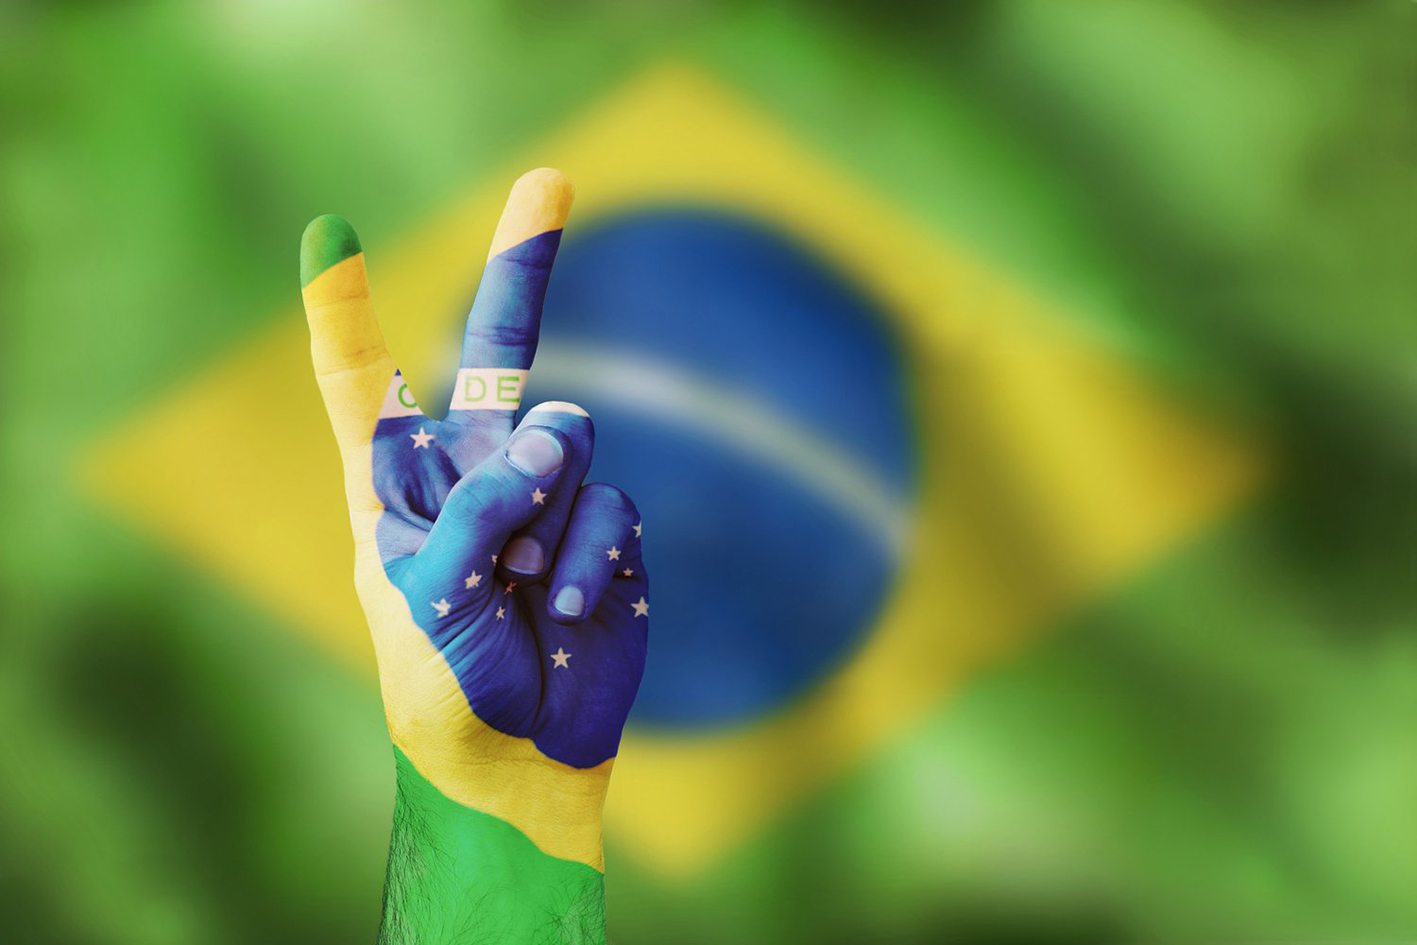 Seu voto vale o Brasil inteiro #vempraurna